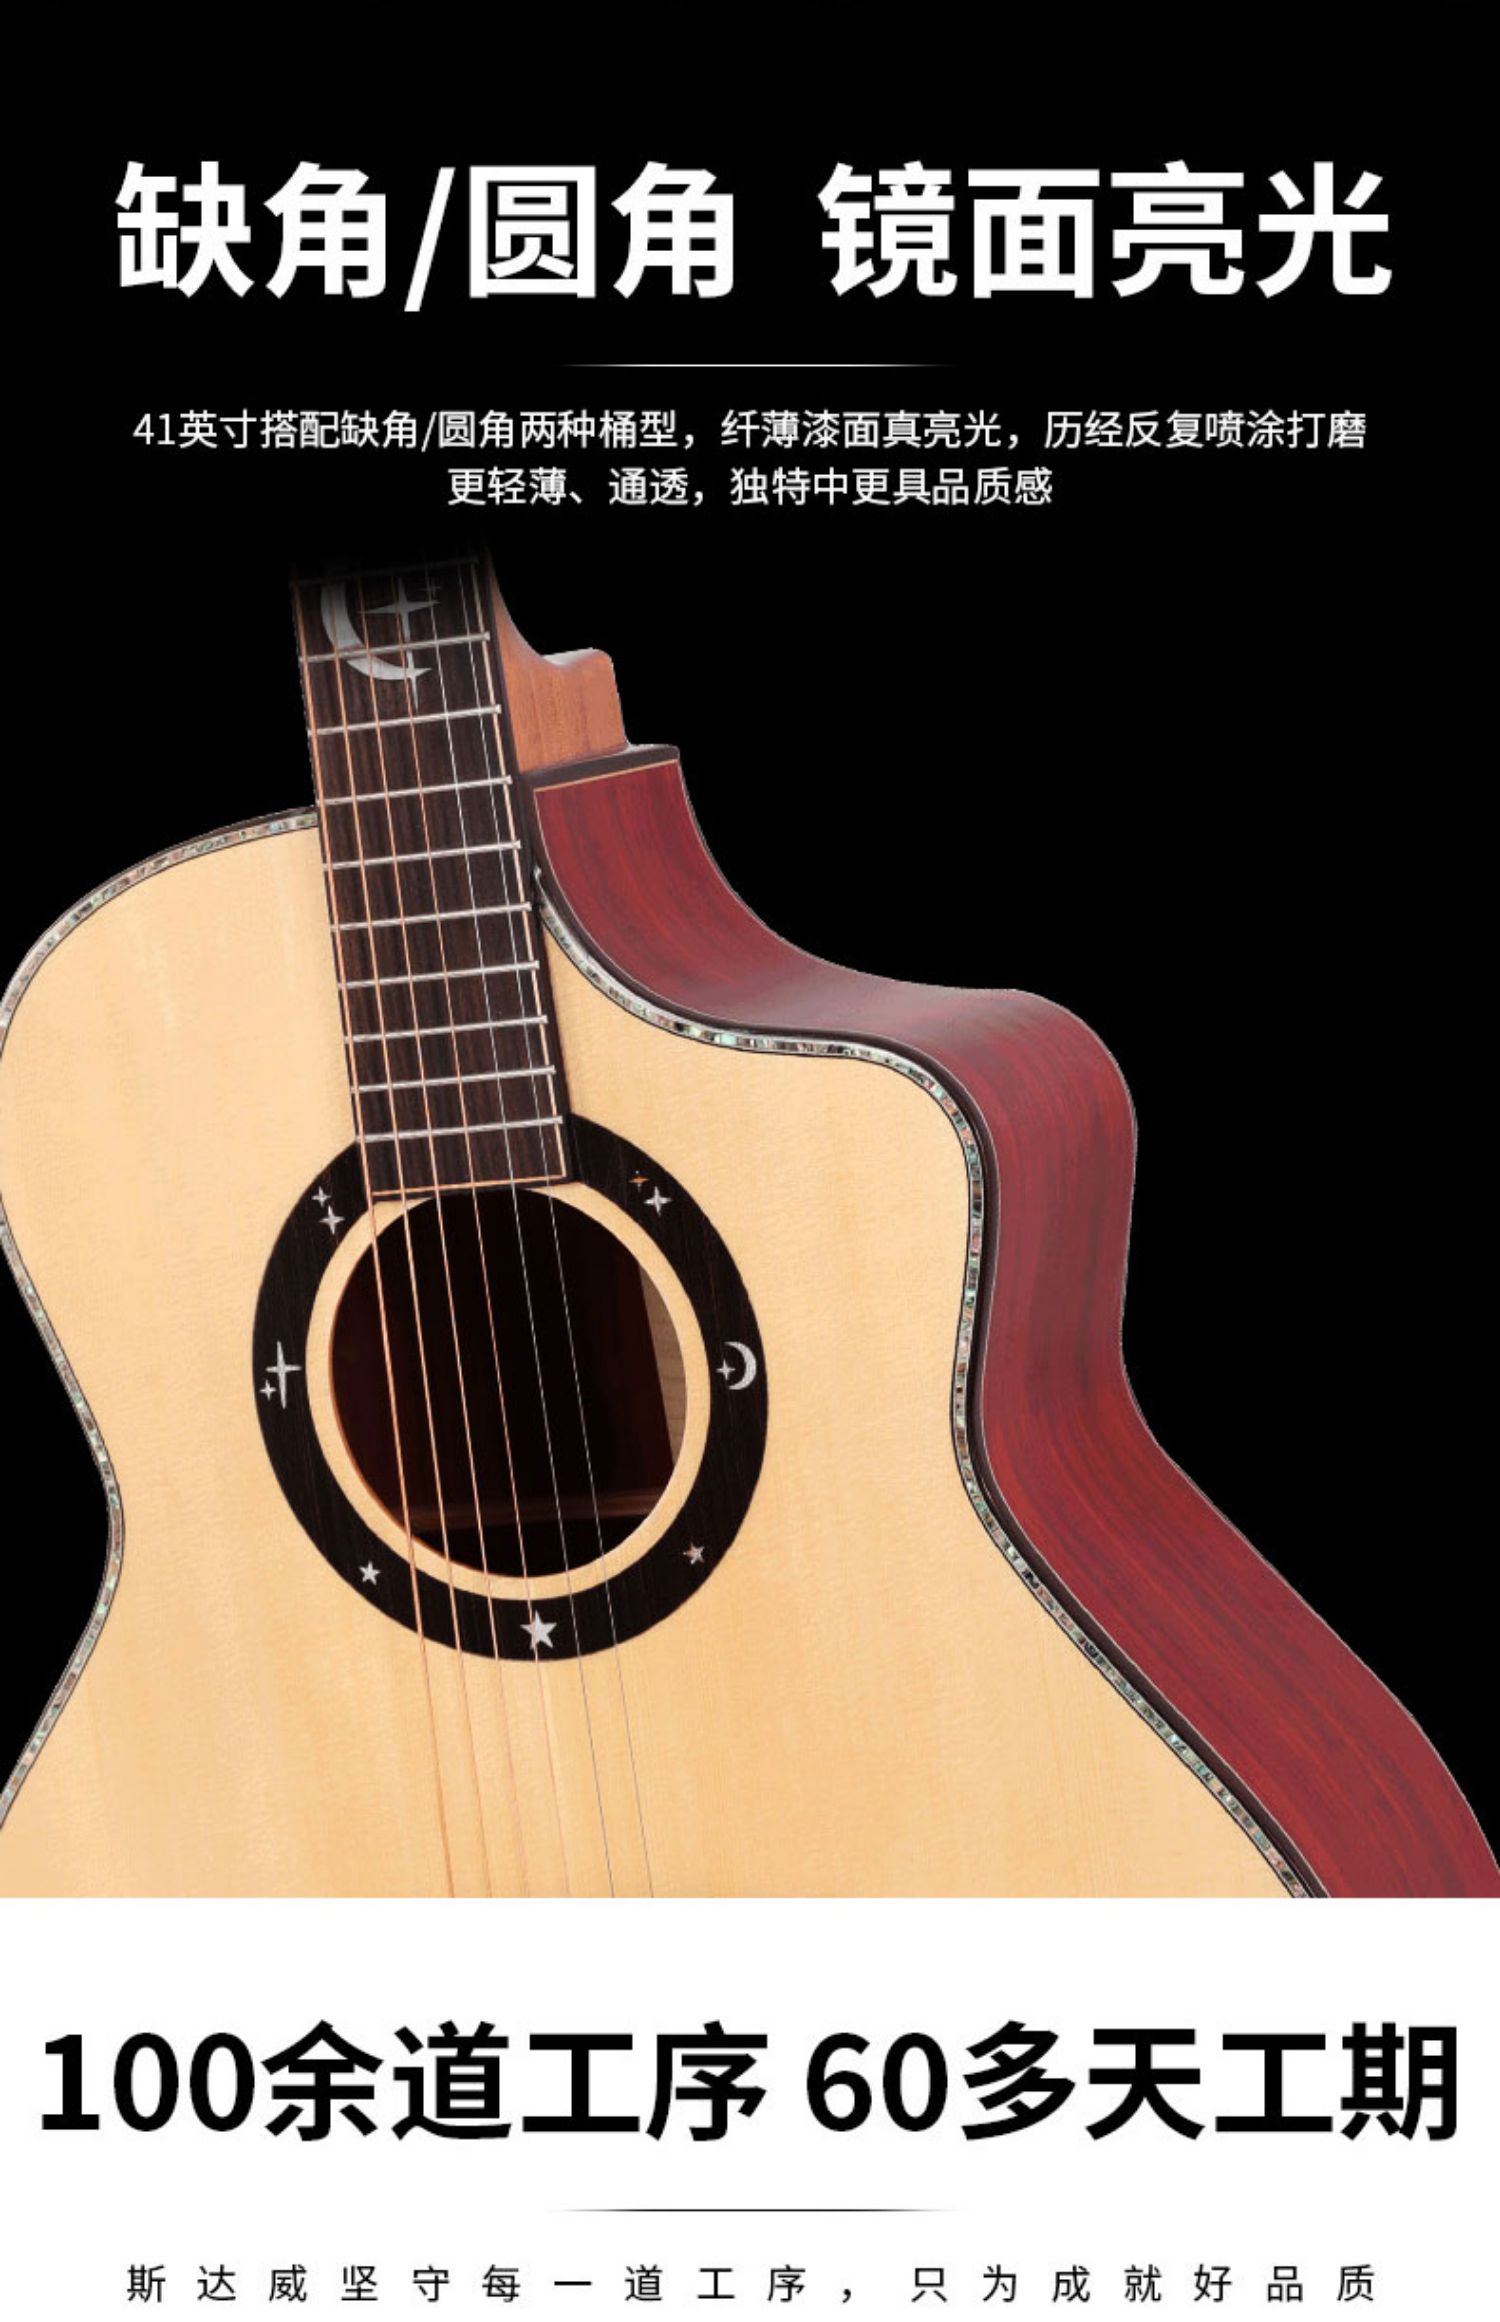 斯达威G65吉他全单亮光41寸民谣吉他手工单板高档专业演奏练习详情5